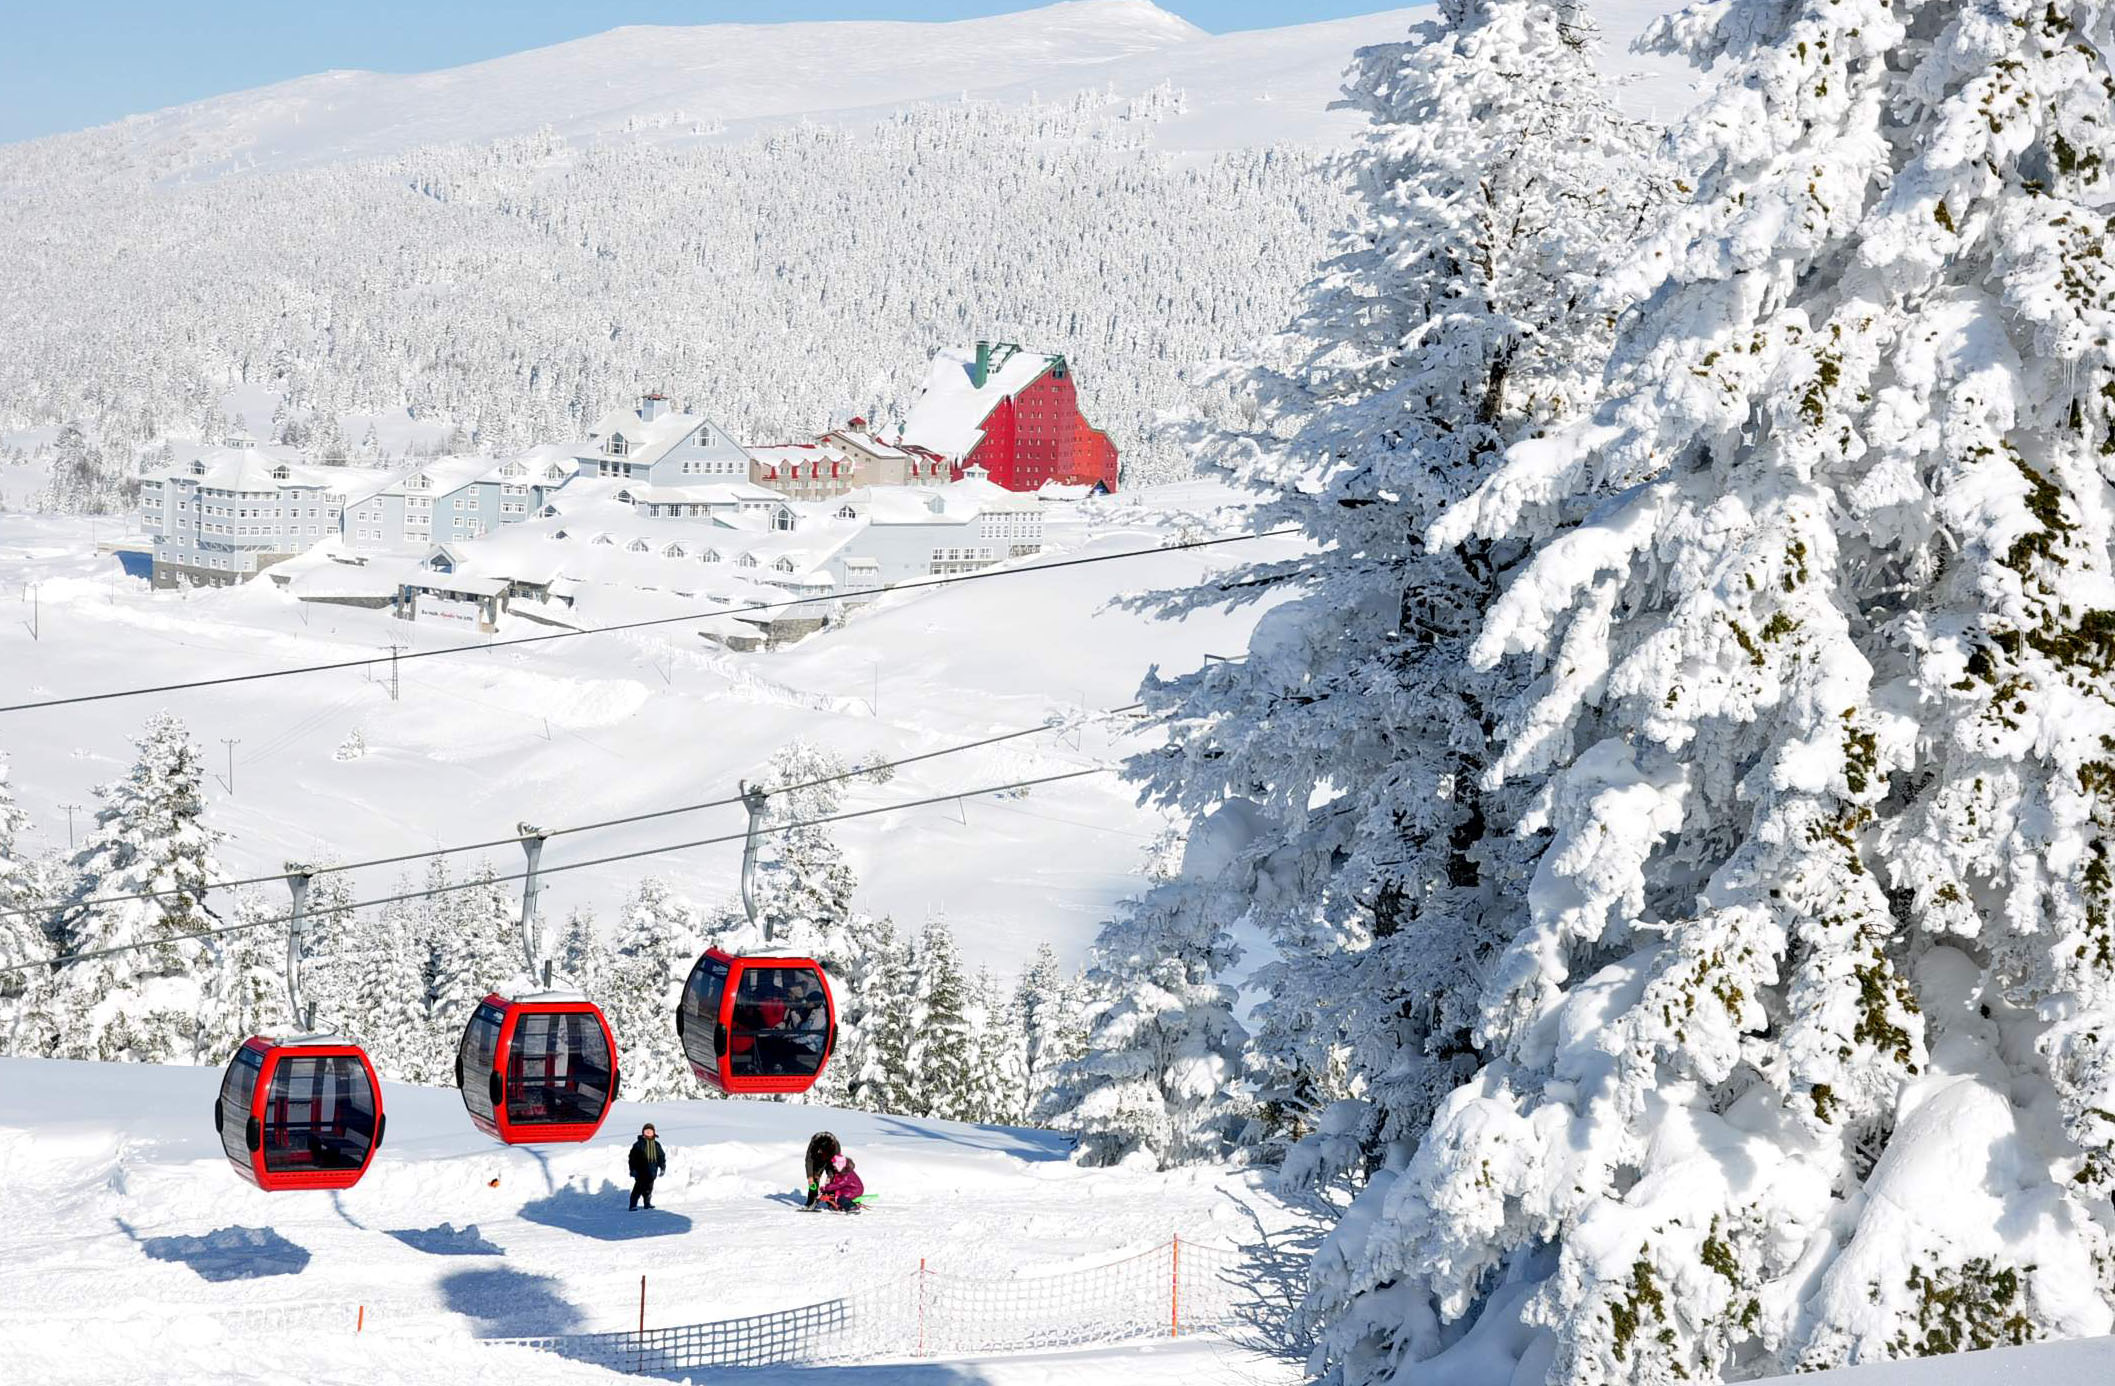 افضل مناطق السياحة الشتوية في تركيا